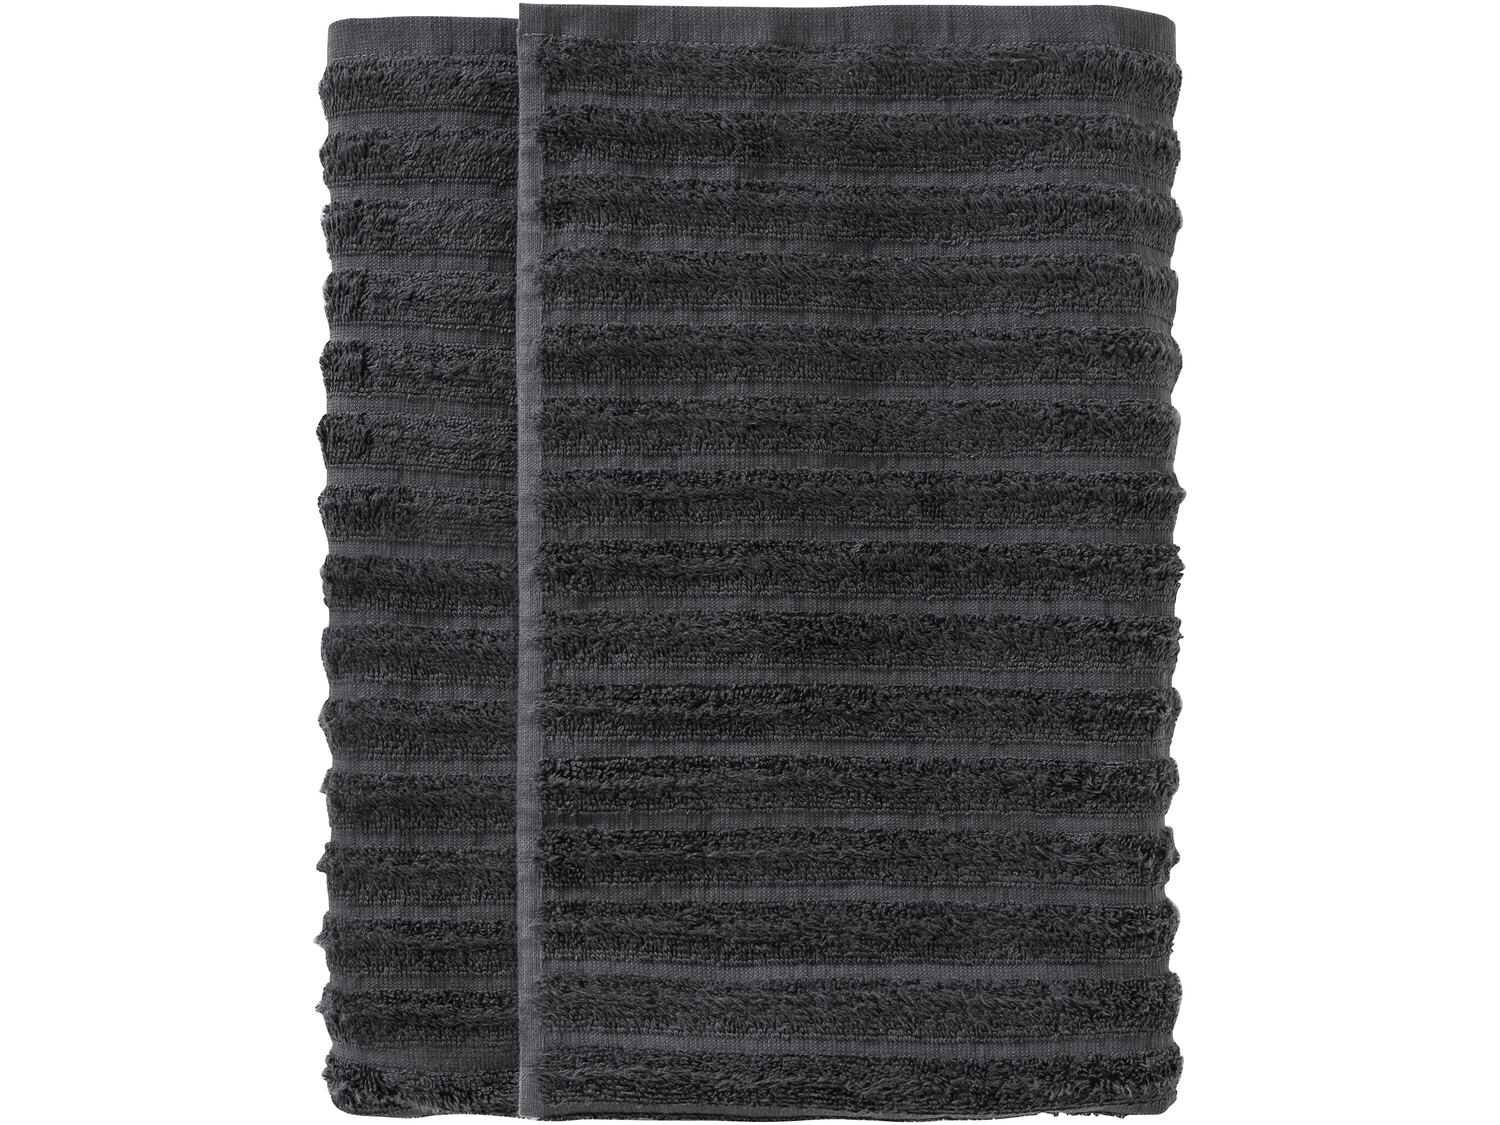 Ręcznik 70 x 140 cm Miomare, cena 22,99PLN
- luksusowy ręcznik bawełniany
- ...